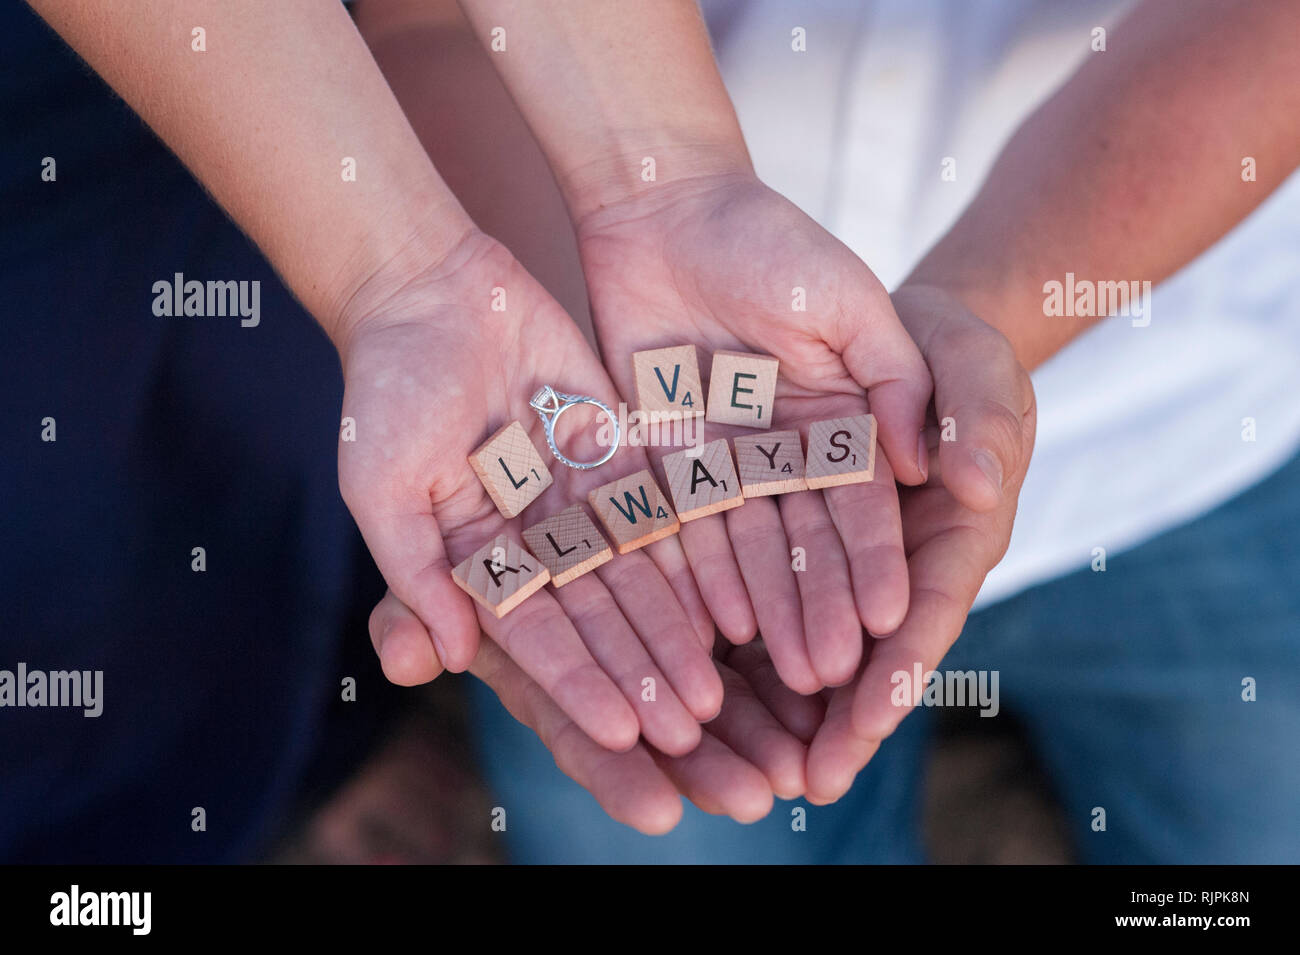 Cierre horizontal de las manos de la pareja ahuecada alrededor de cada una de las demás piezas de Scrabble, sujetando la ortografía de las palabras "el amor siempre' con el anillo. Foto de stock